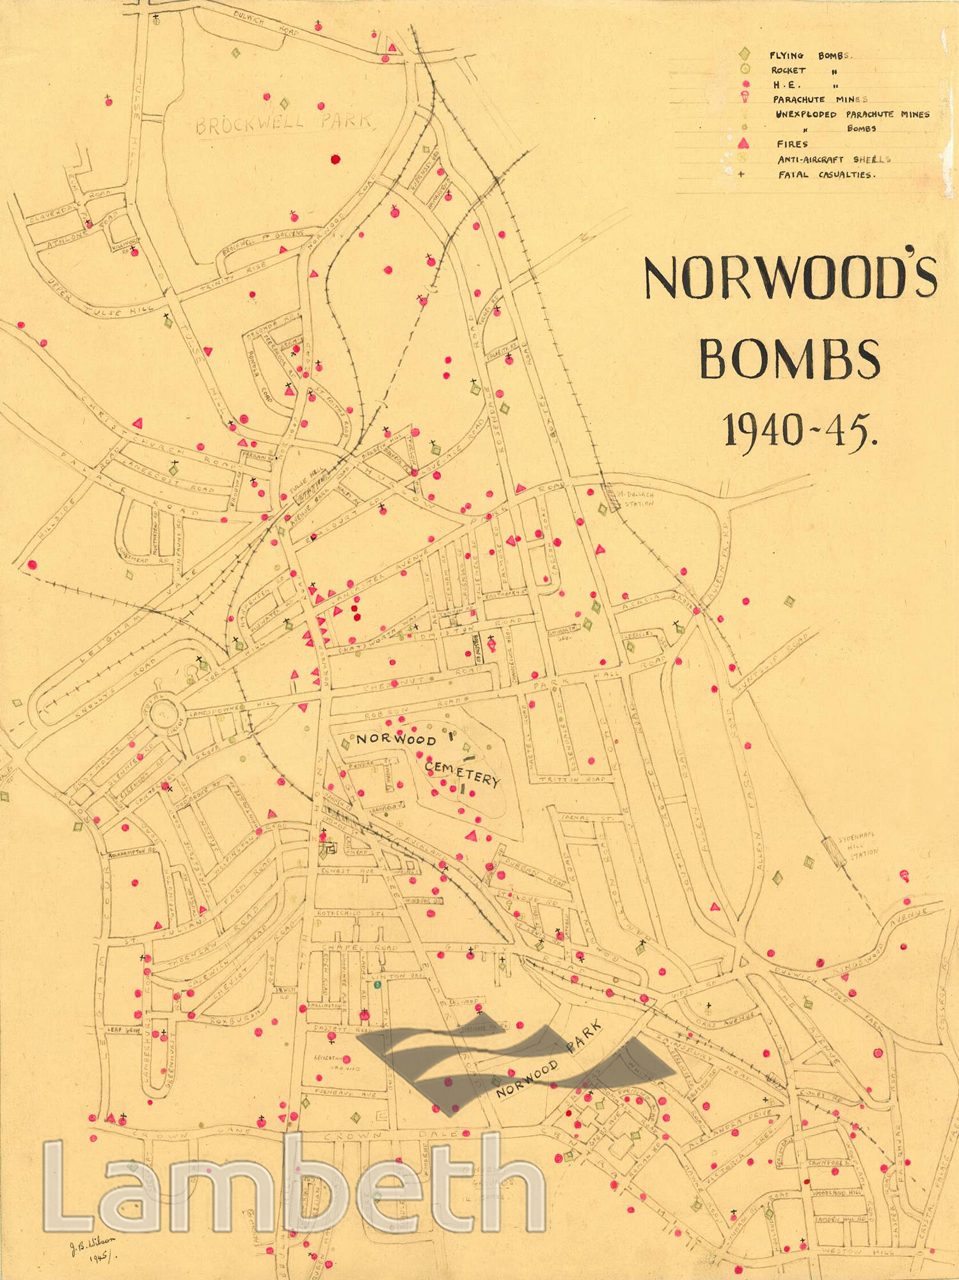 NORWOOD BOMB MAP, WORLD WAR II